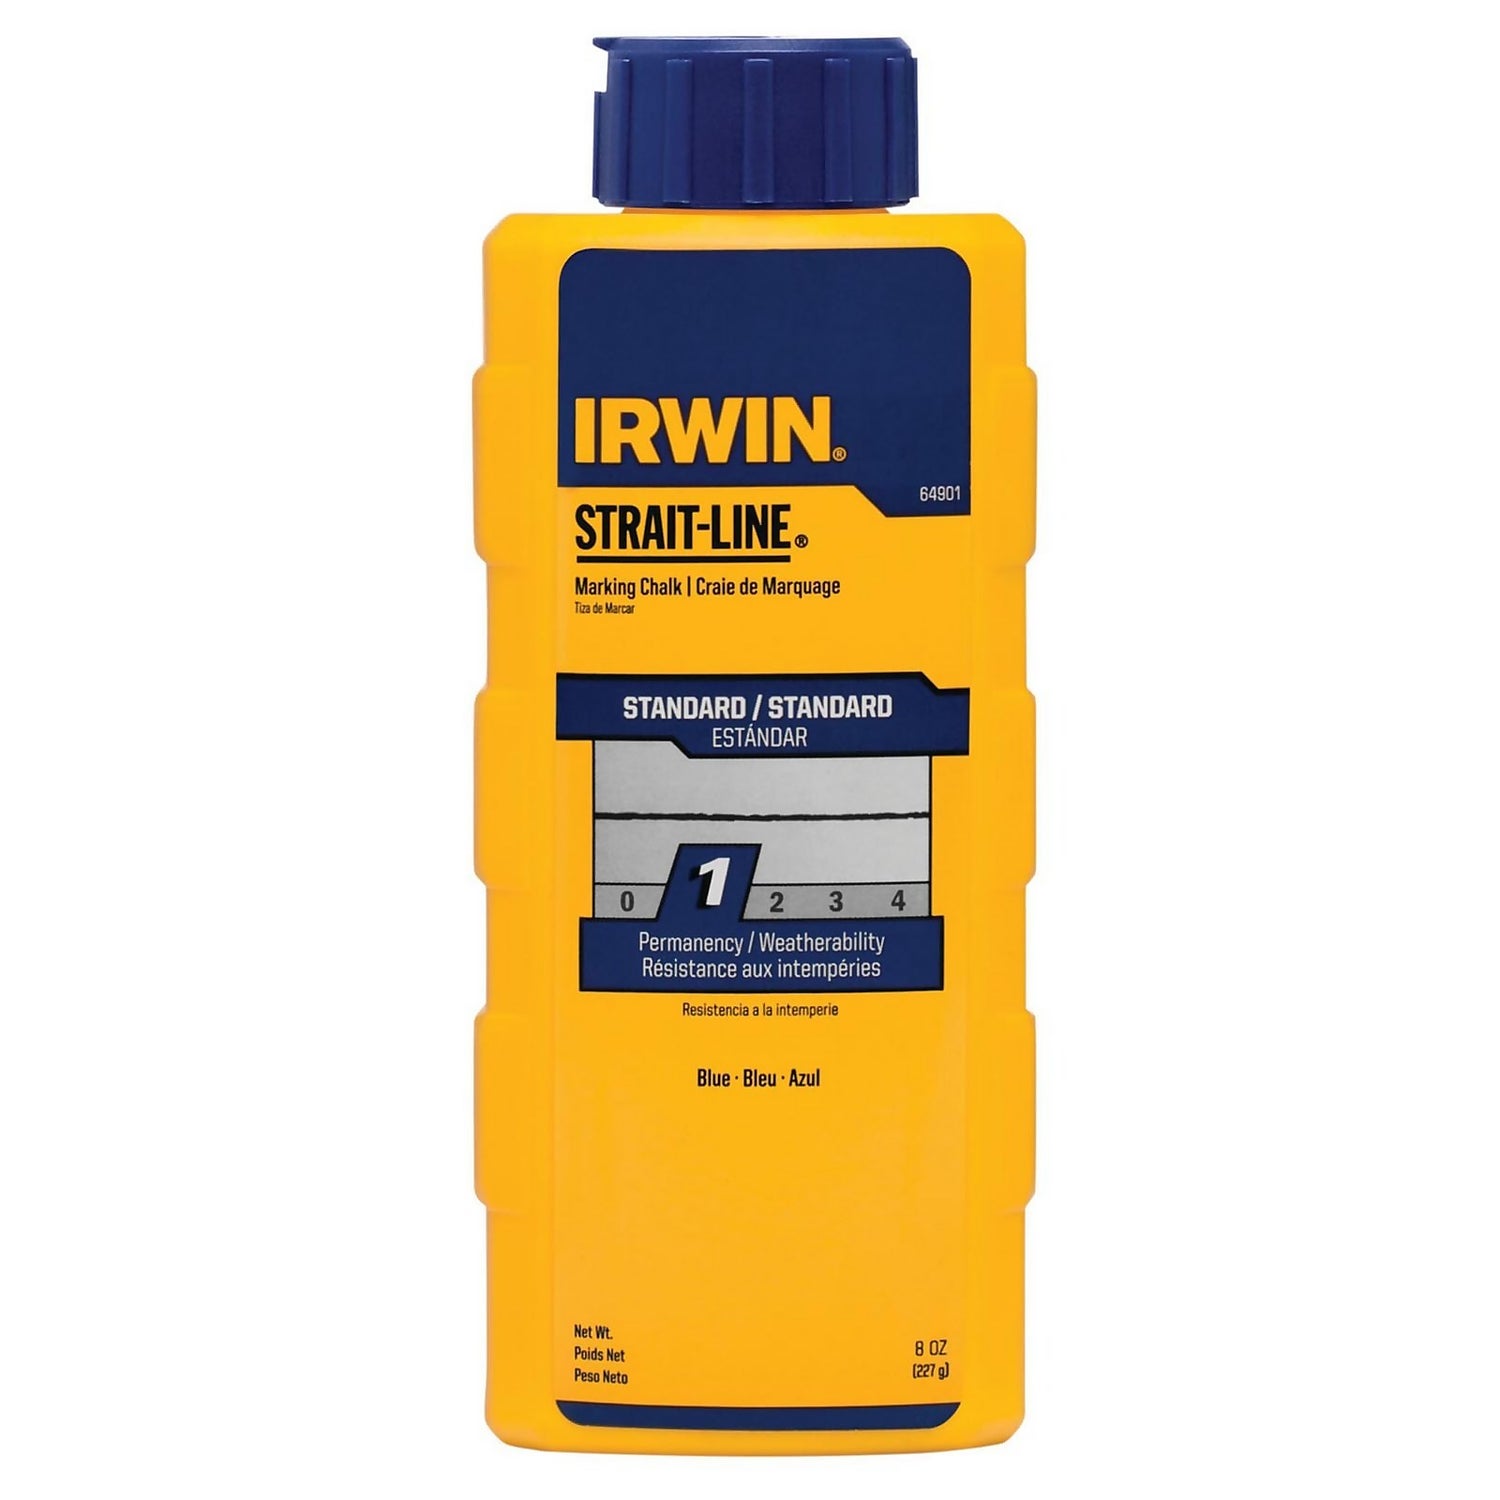 IRWIN STRAIT-LINE Blue Marking Chalk 8oz/227g (64901)